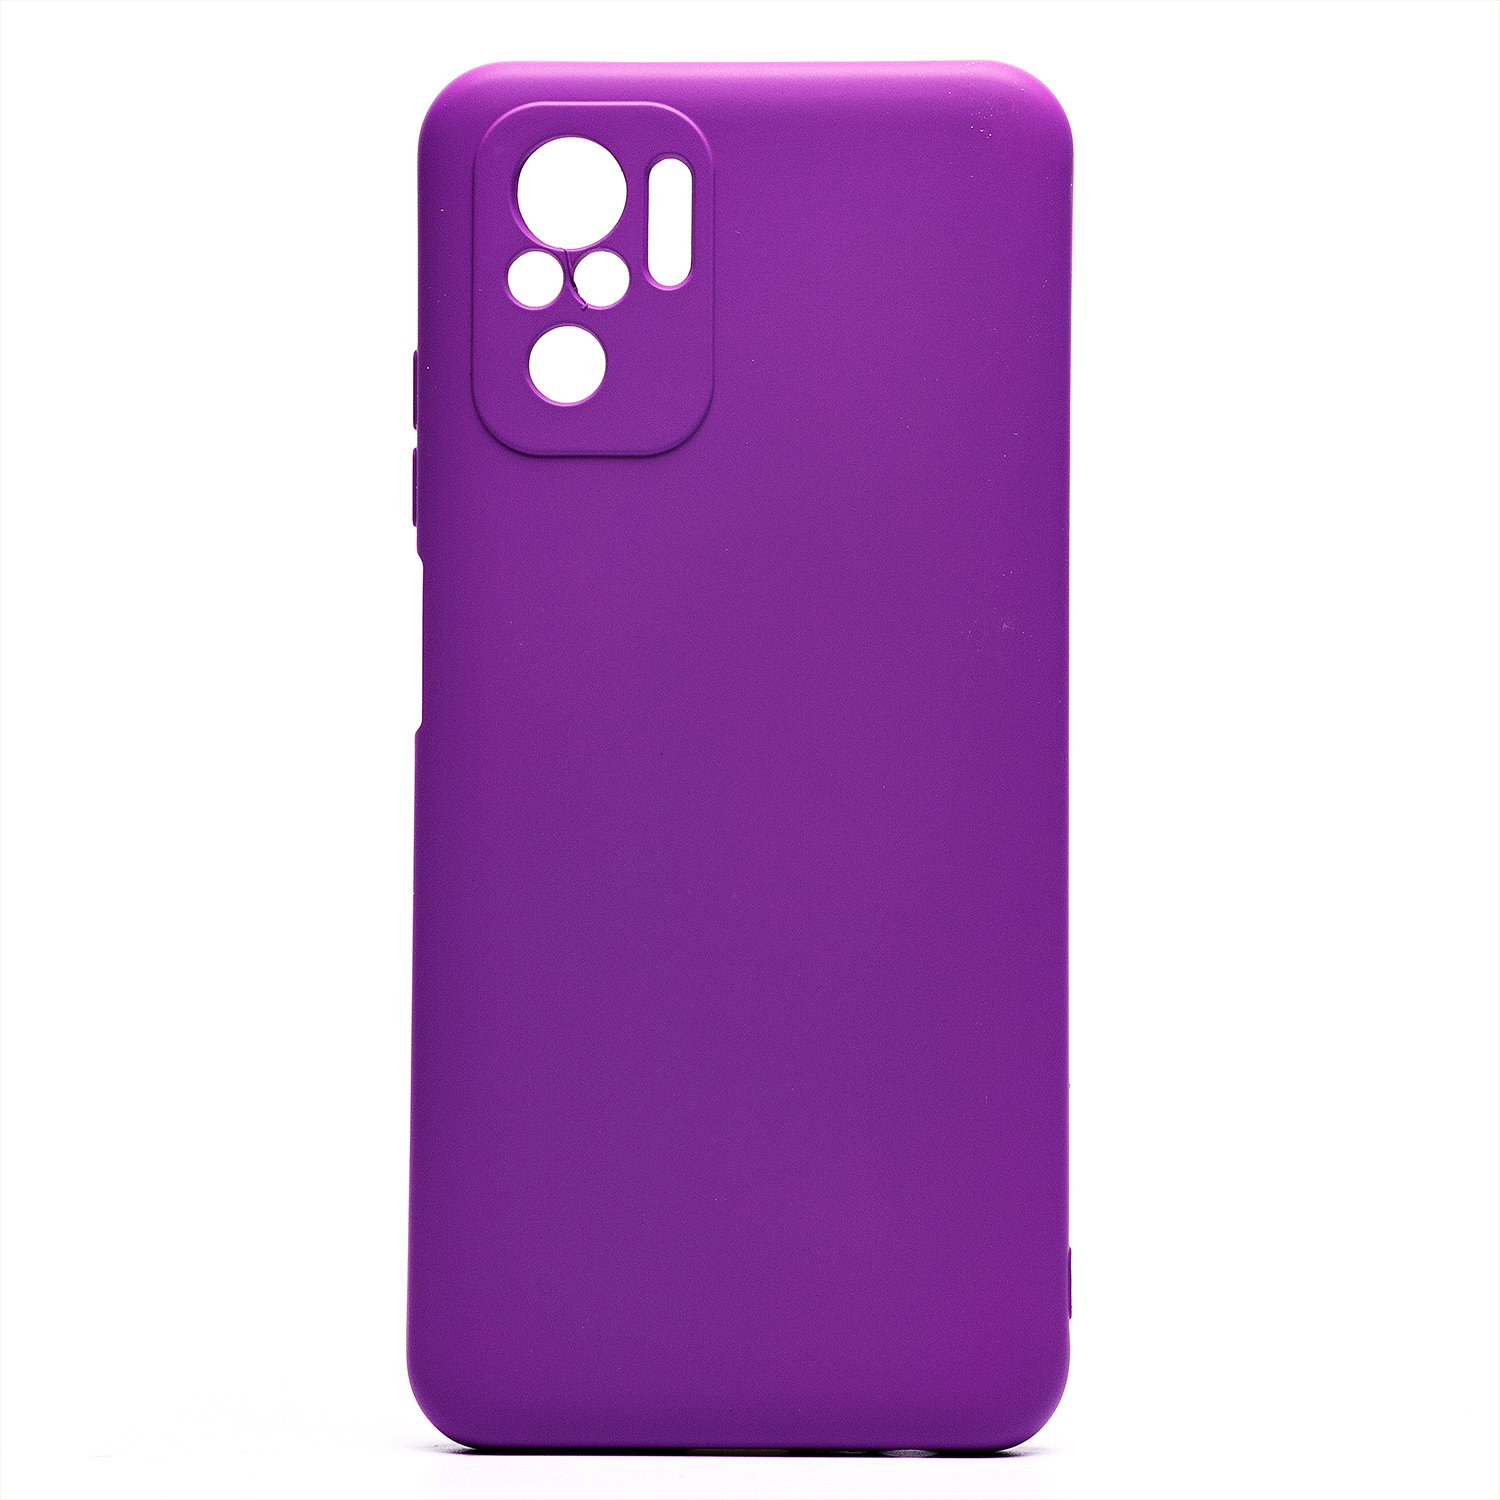 Чехол-накладка Activ Full Original Design для смартфона Xiaomi Redmi Note 10/Redmi Note 10S, силикон, фиолетовый (209058)